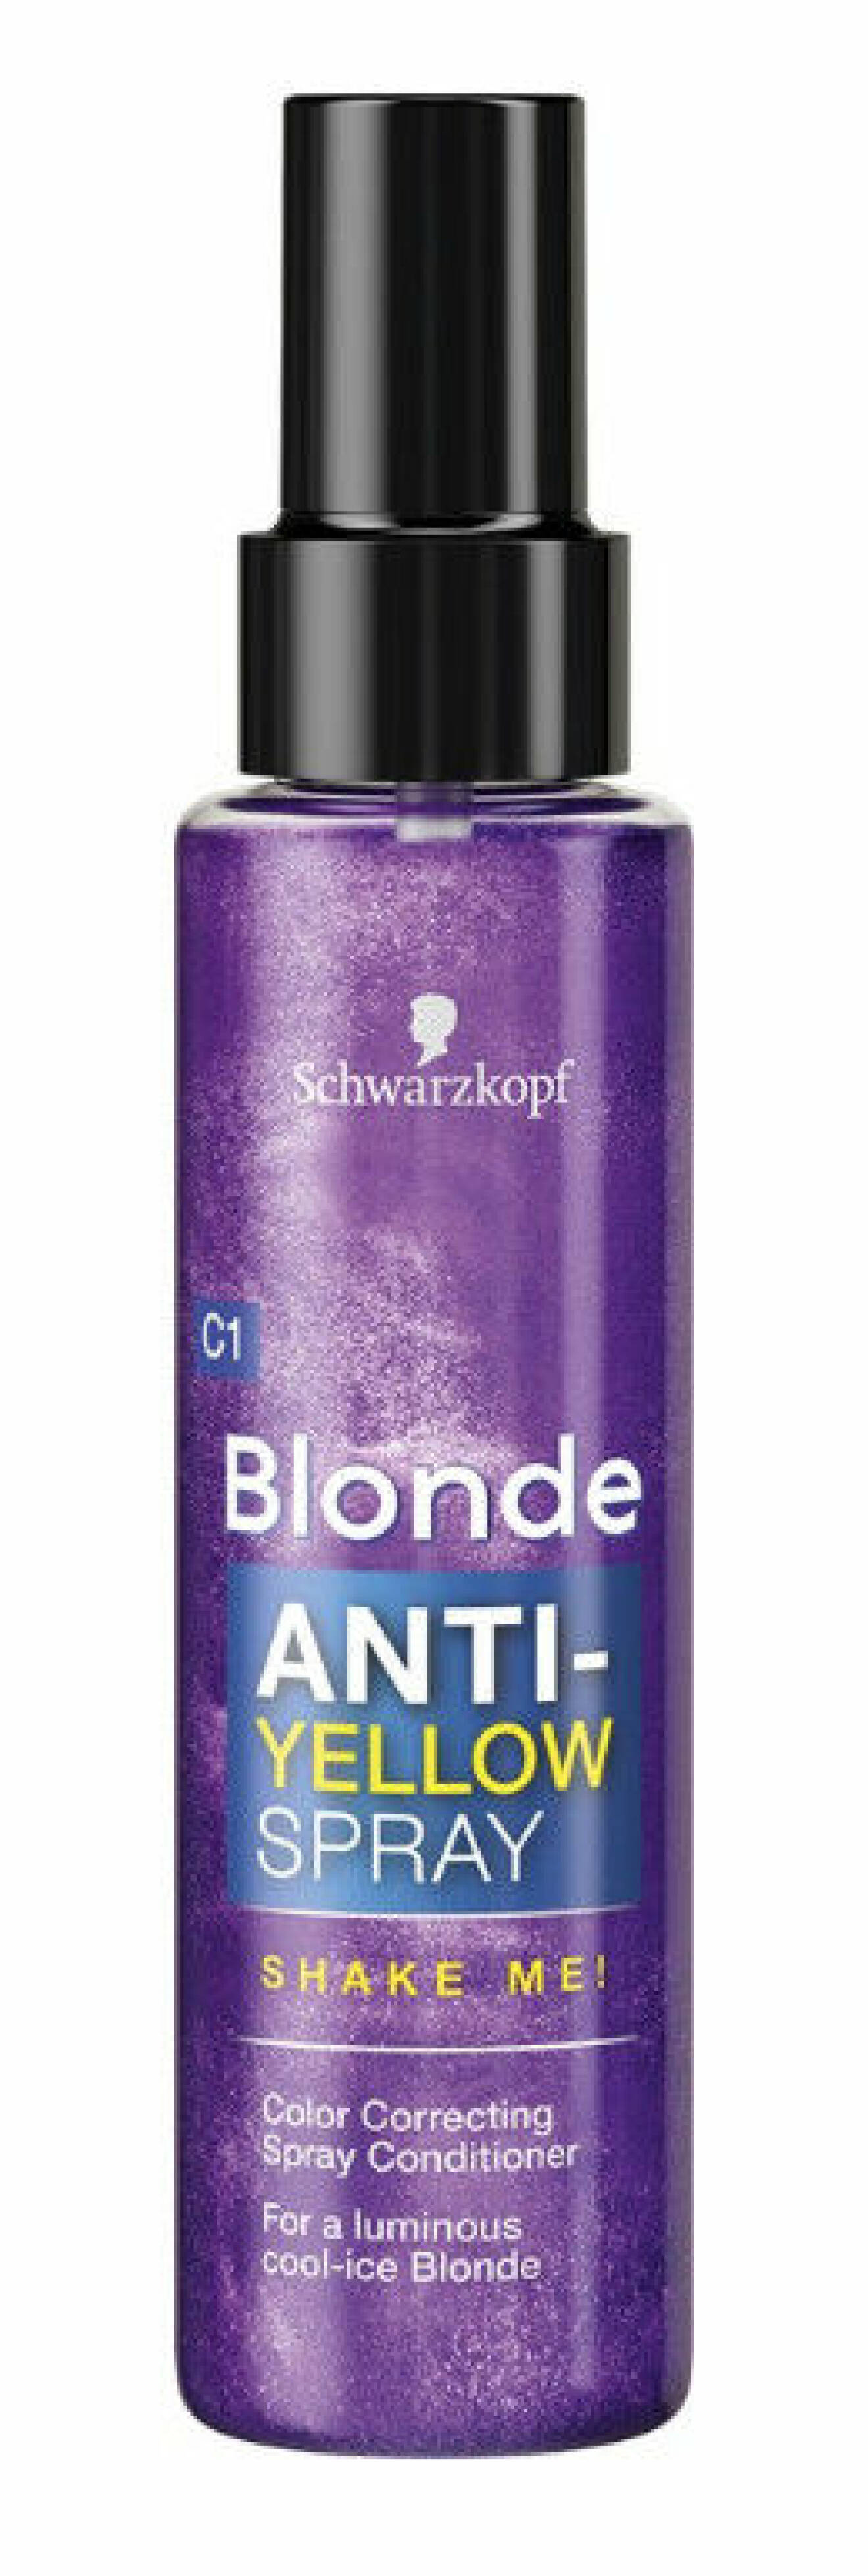 Schwatzkopf blonde spray.